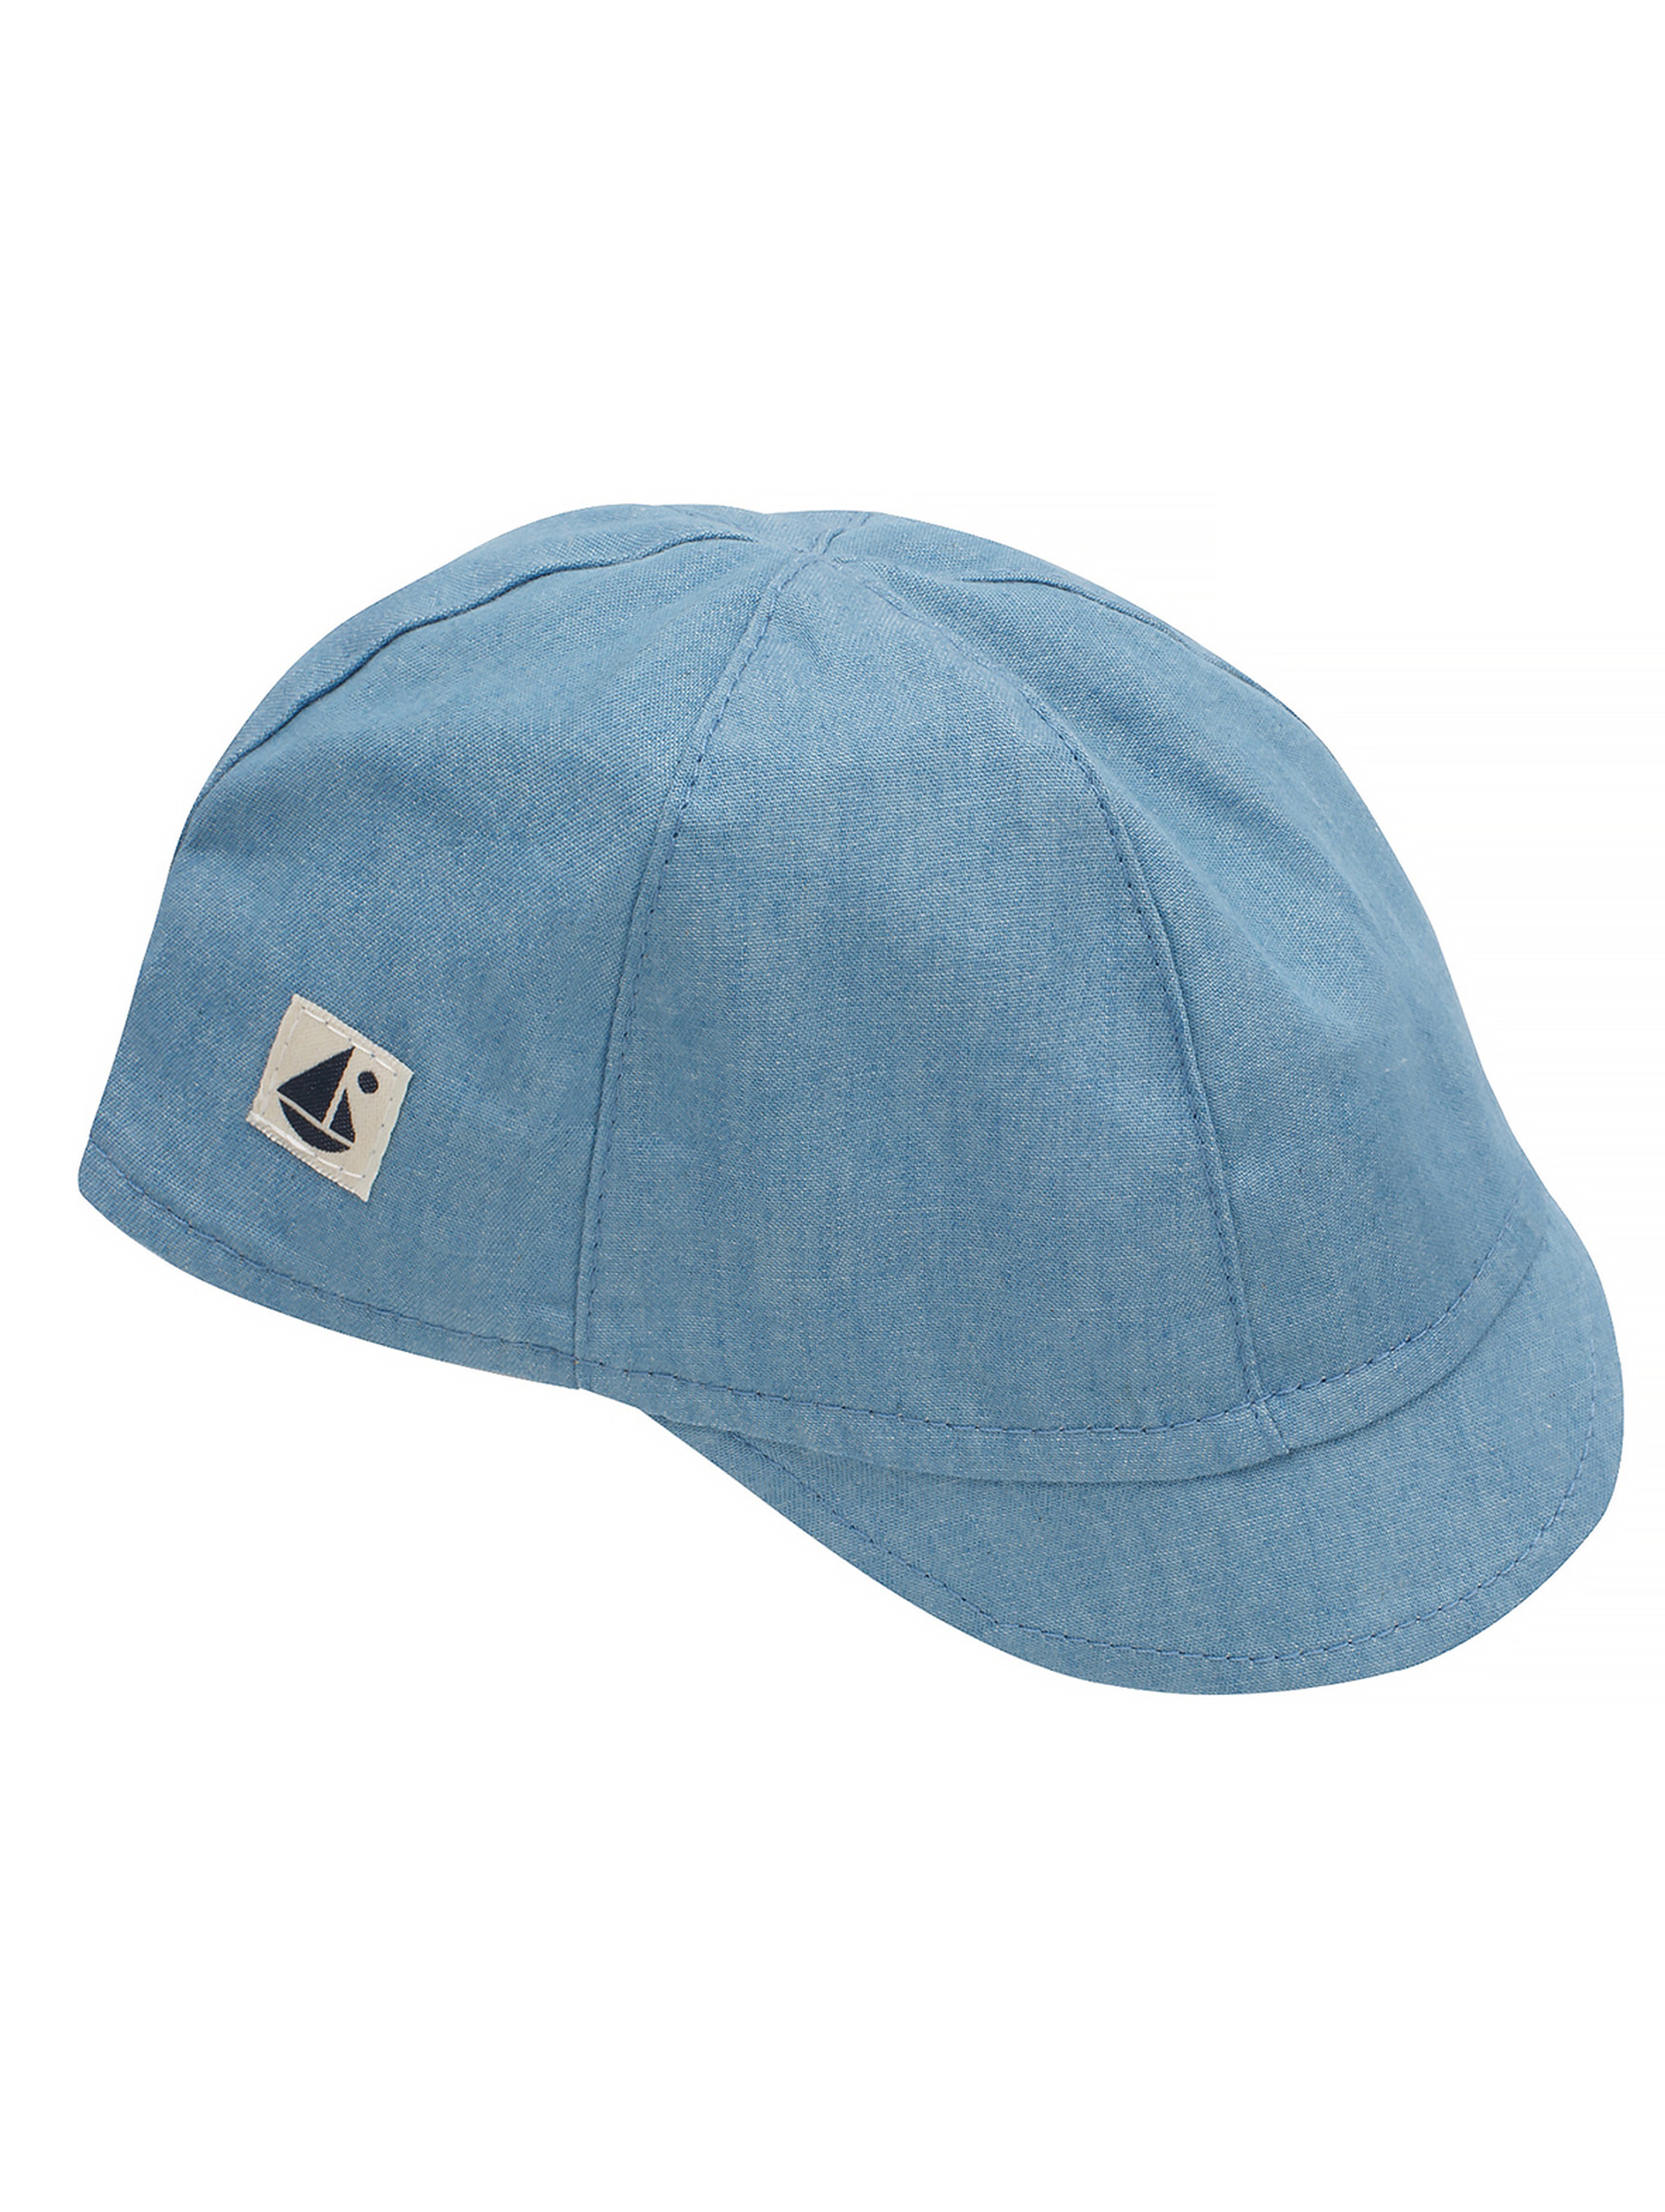 Niebieska czapka z daszkiem dla chłopca sailor jeans